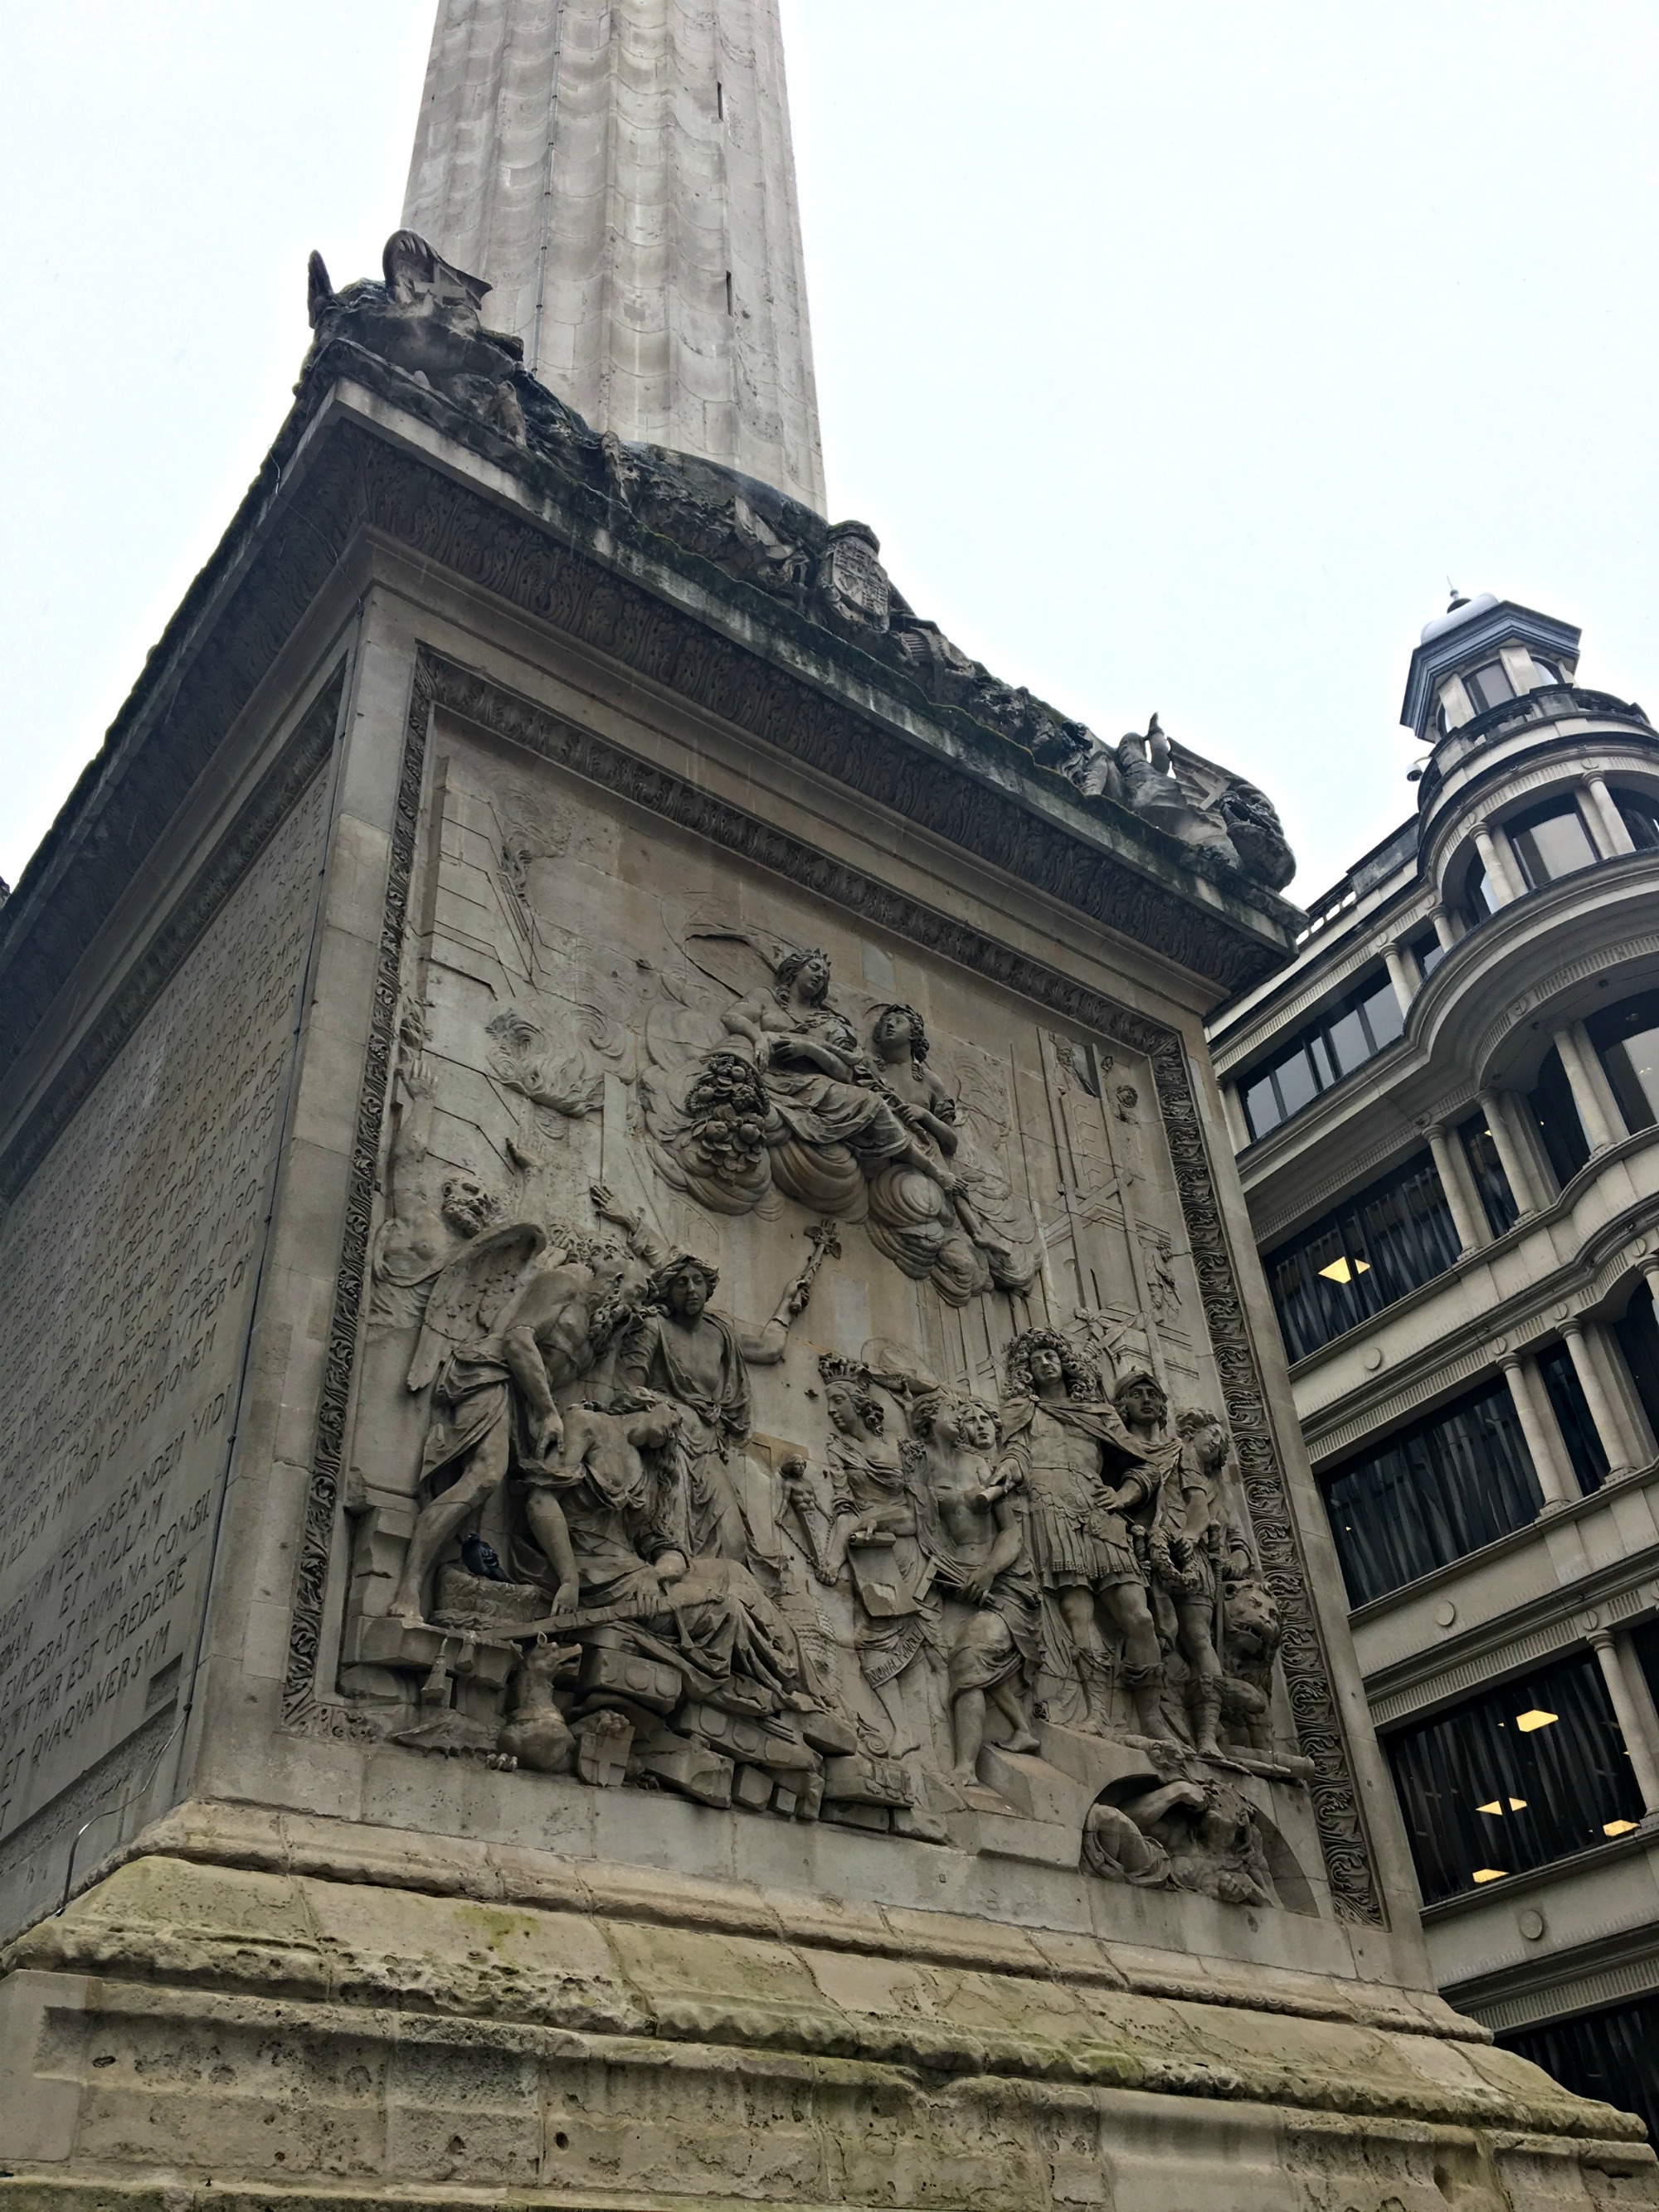 Bottom of Monument London